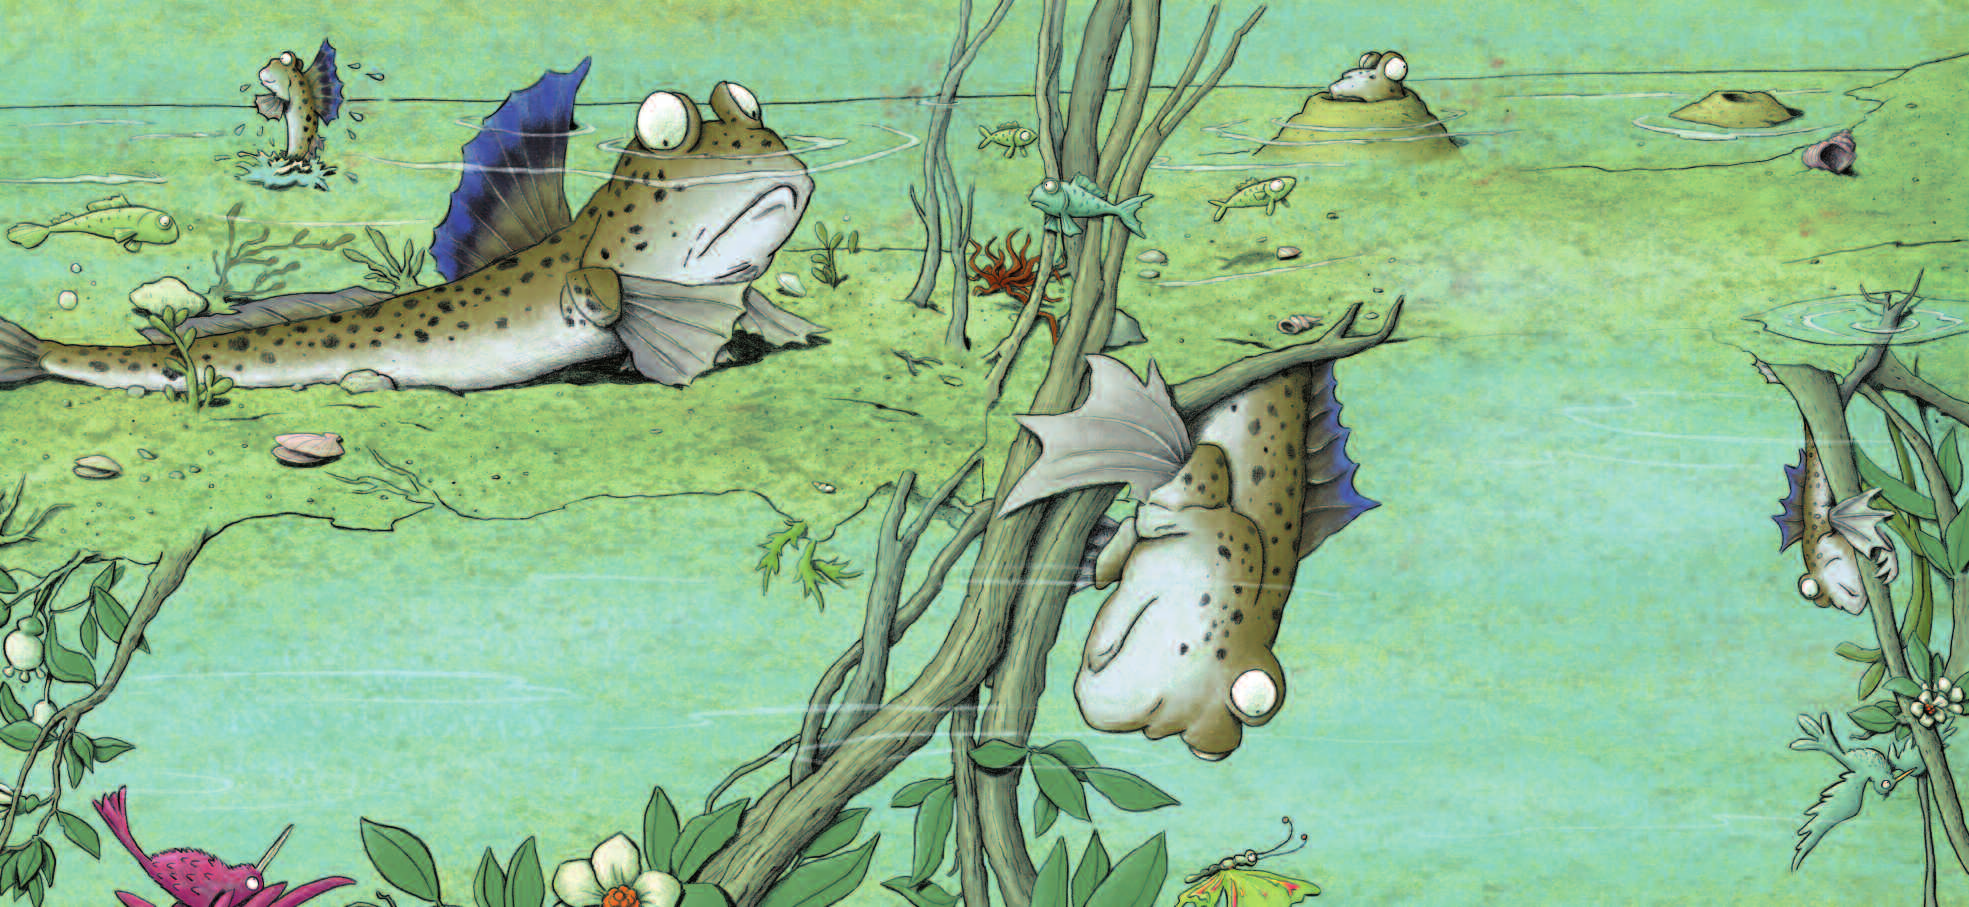 Der Schlammspringer Der Schlammspringer lebt in den flachen Randgebieten von tropischen Gewässern. Er atmet wie ein Fisch durch Kiemen und schwimmt im Wasser.